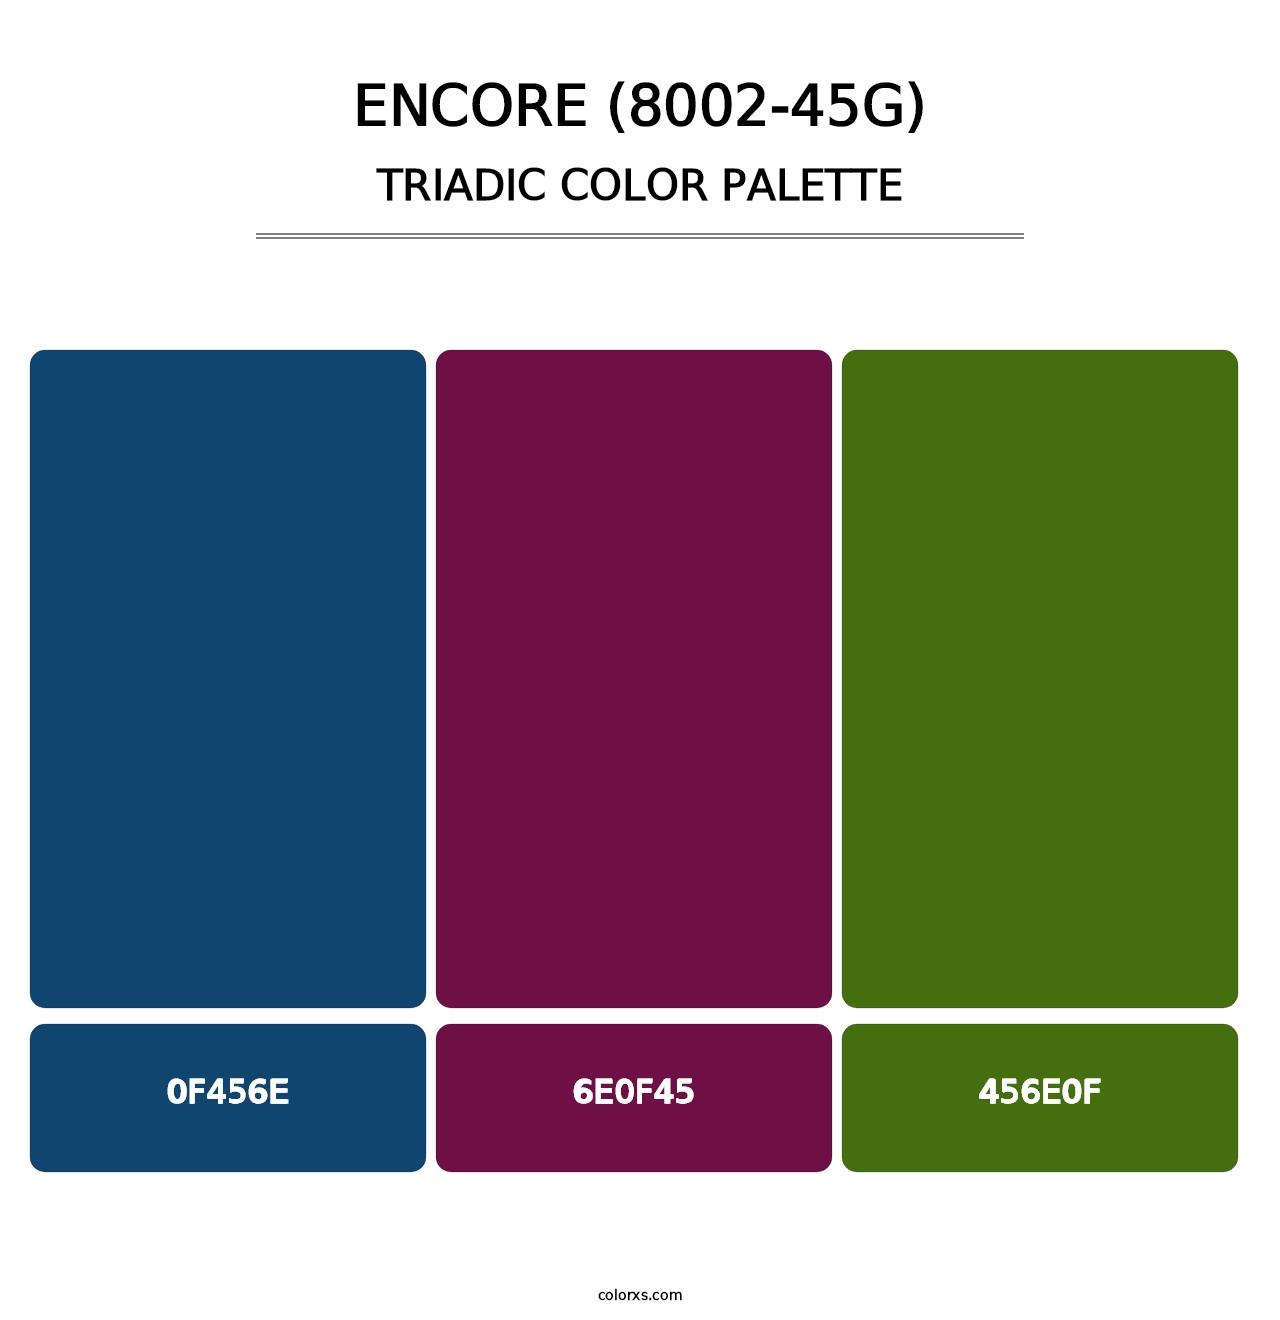 Encore (8002-45G) - Triadic Color Palette